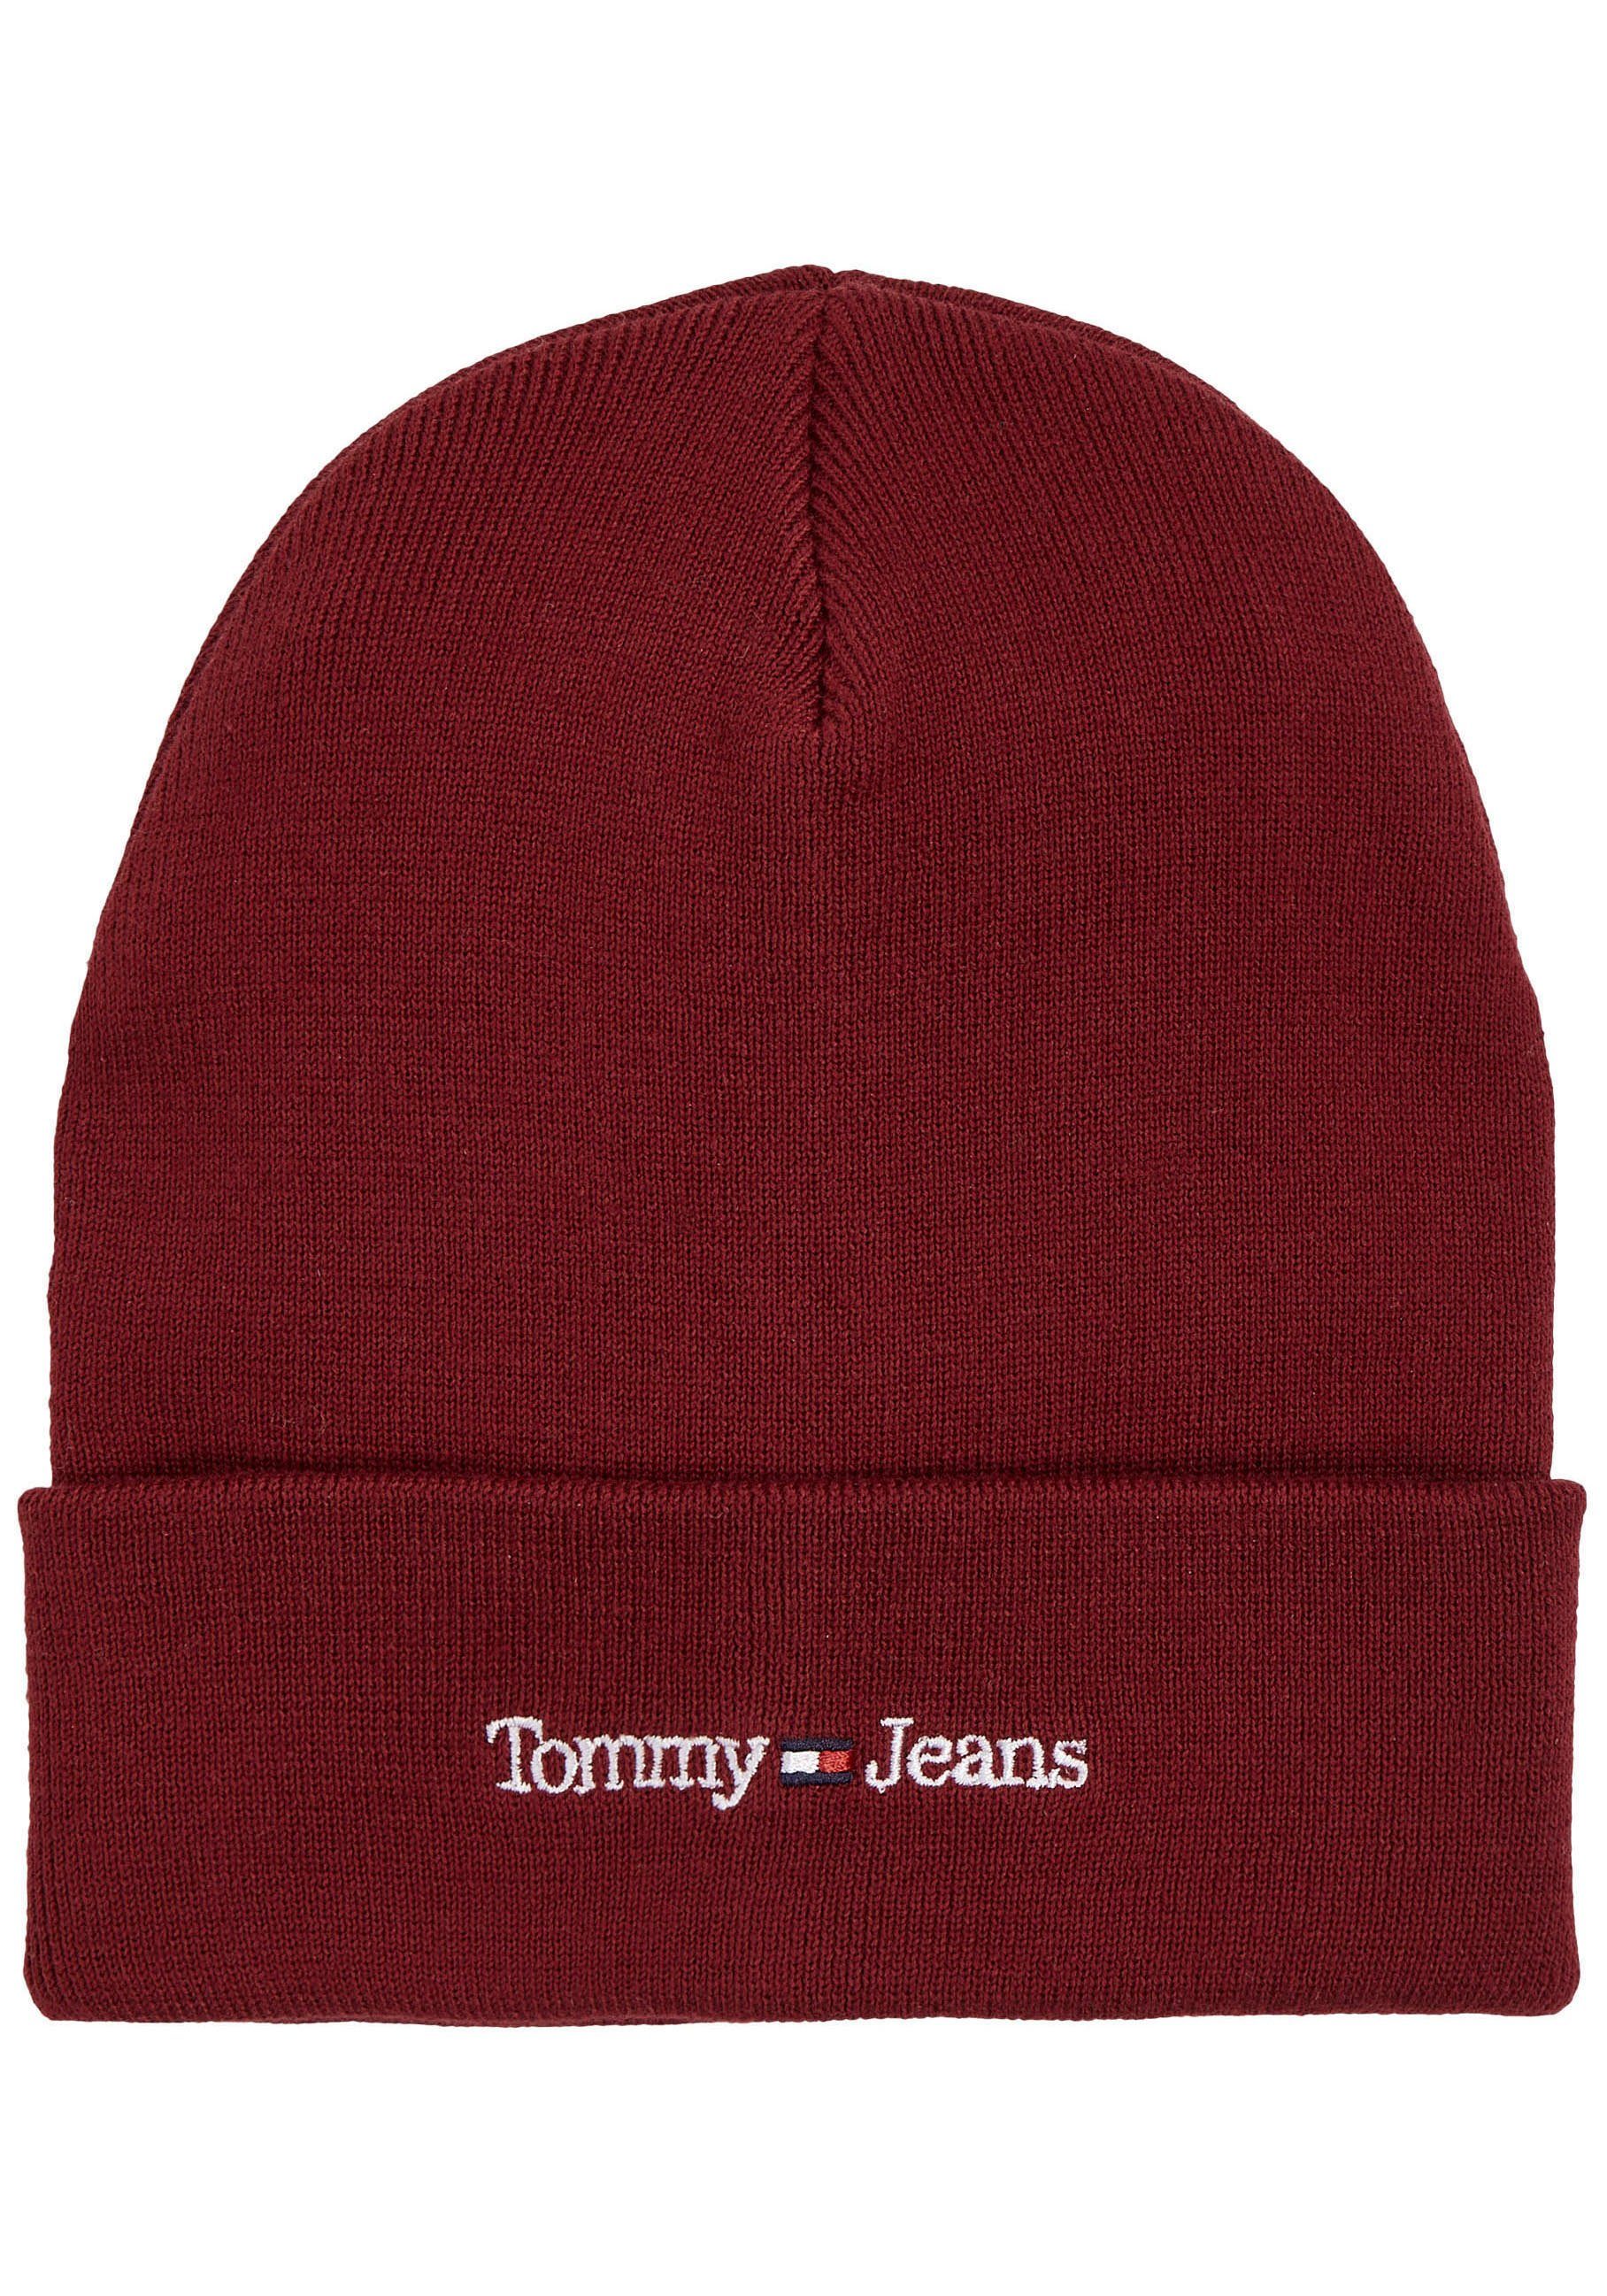 [Kostenlose landesweite Lieferung] Tommy Jeans Rouge BEANIE TJM SPORT Beanie